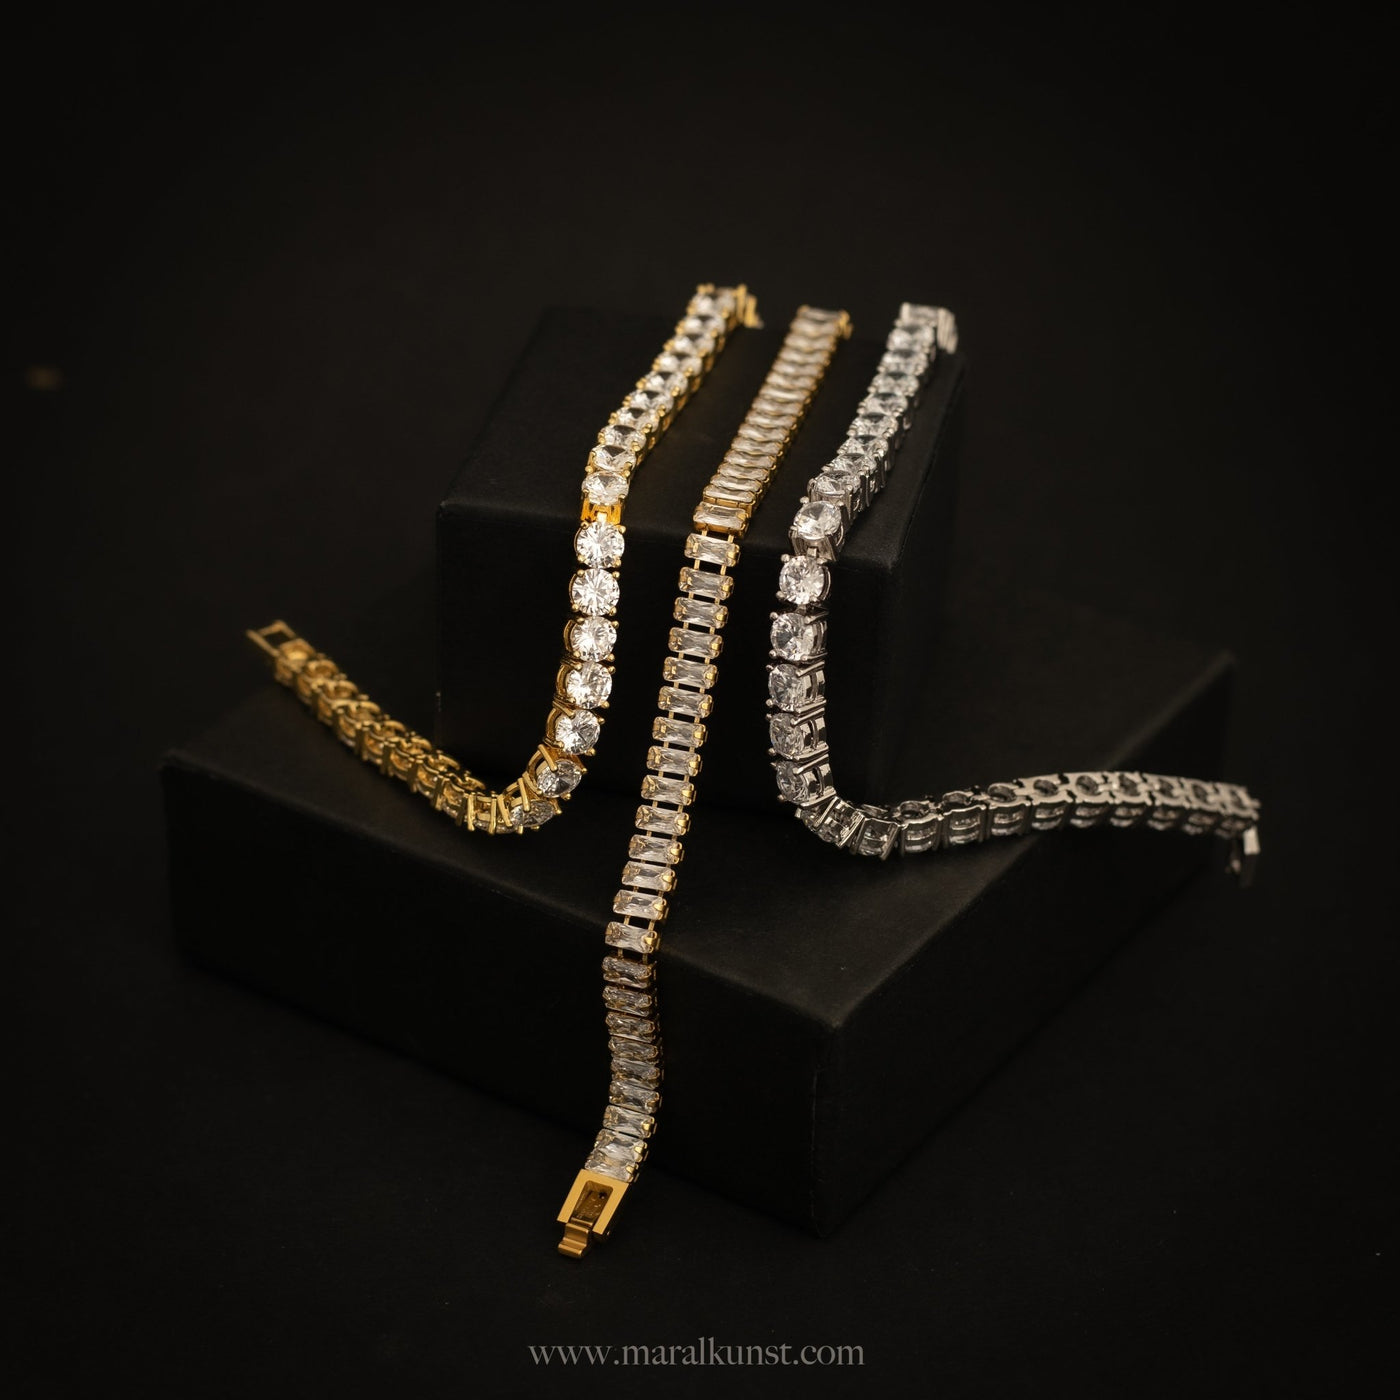 French CZ Tennis Bracelet - Maral Kunst Jewelry